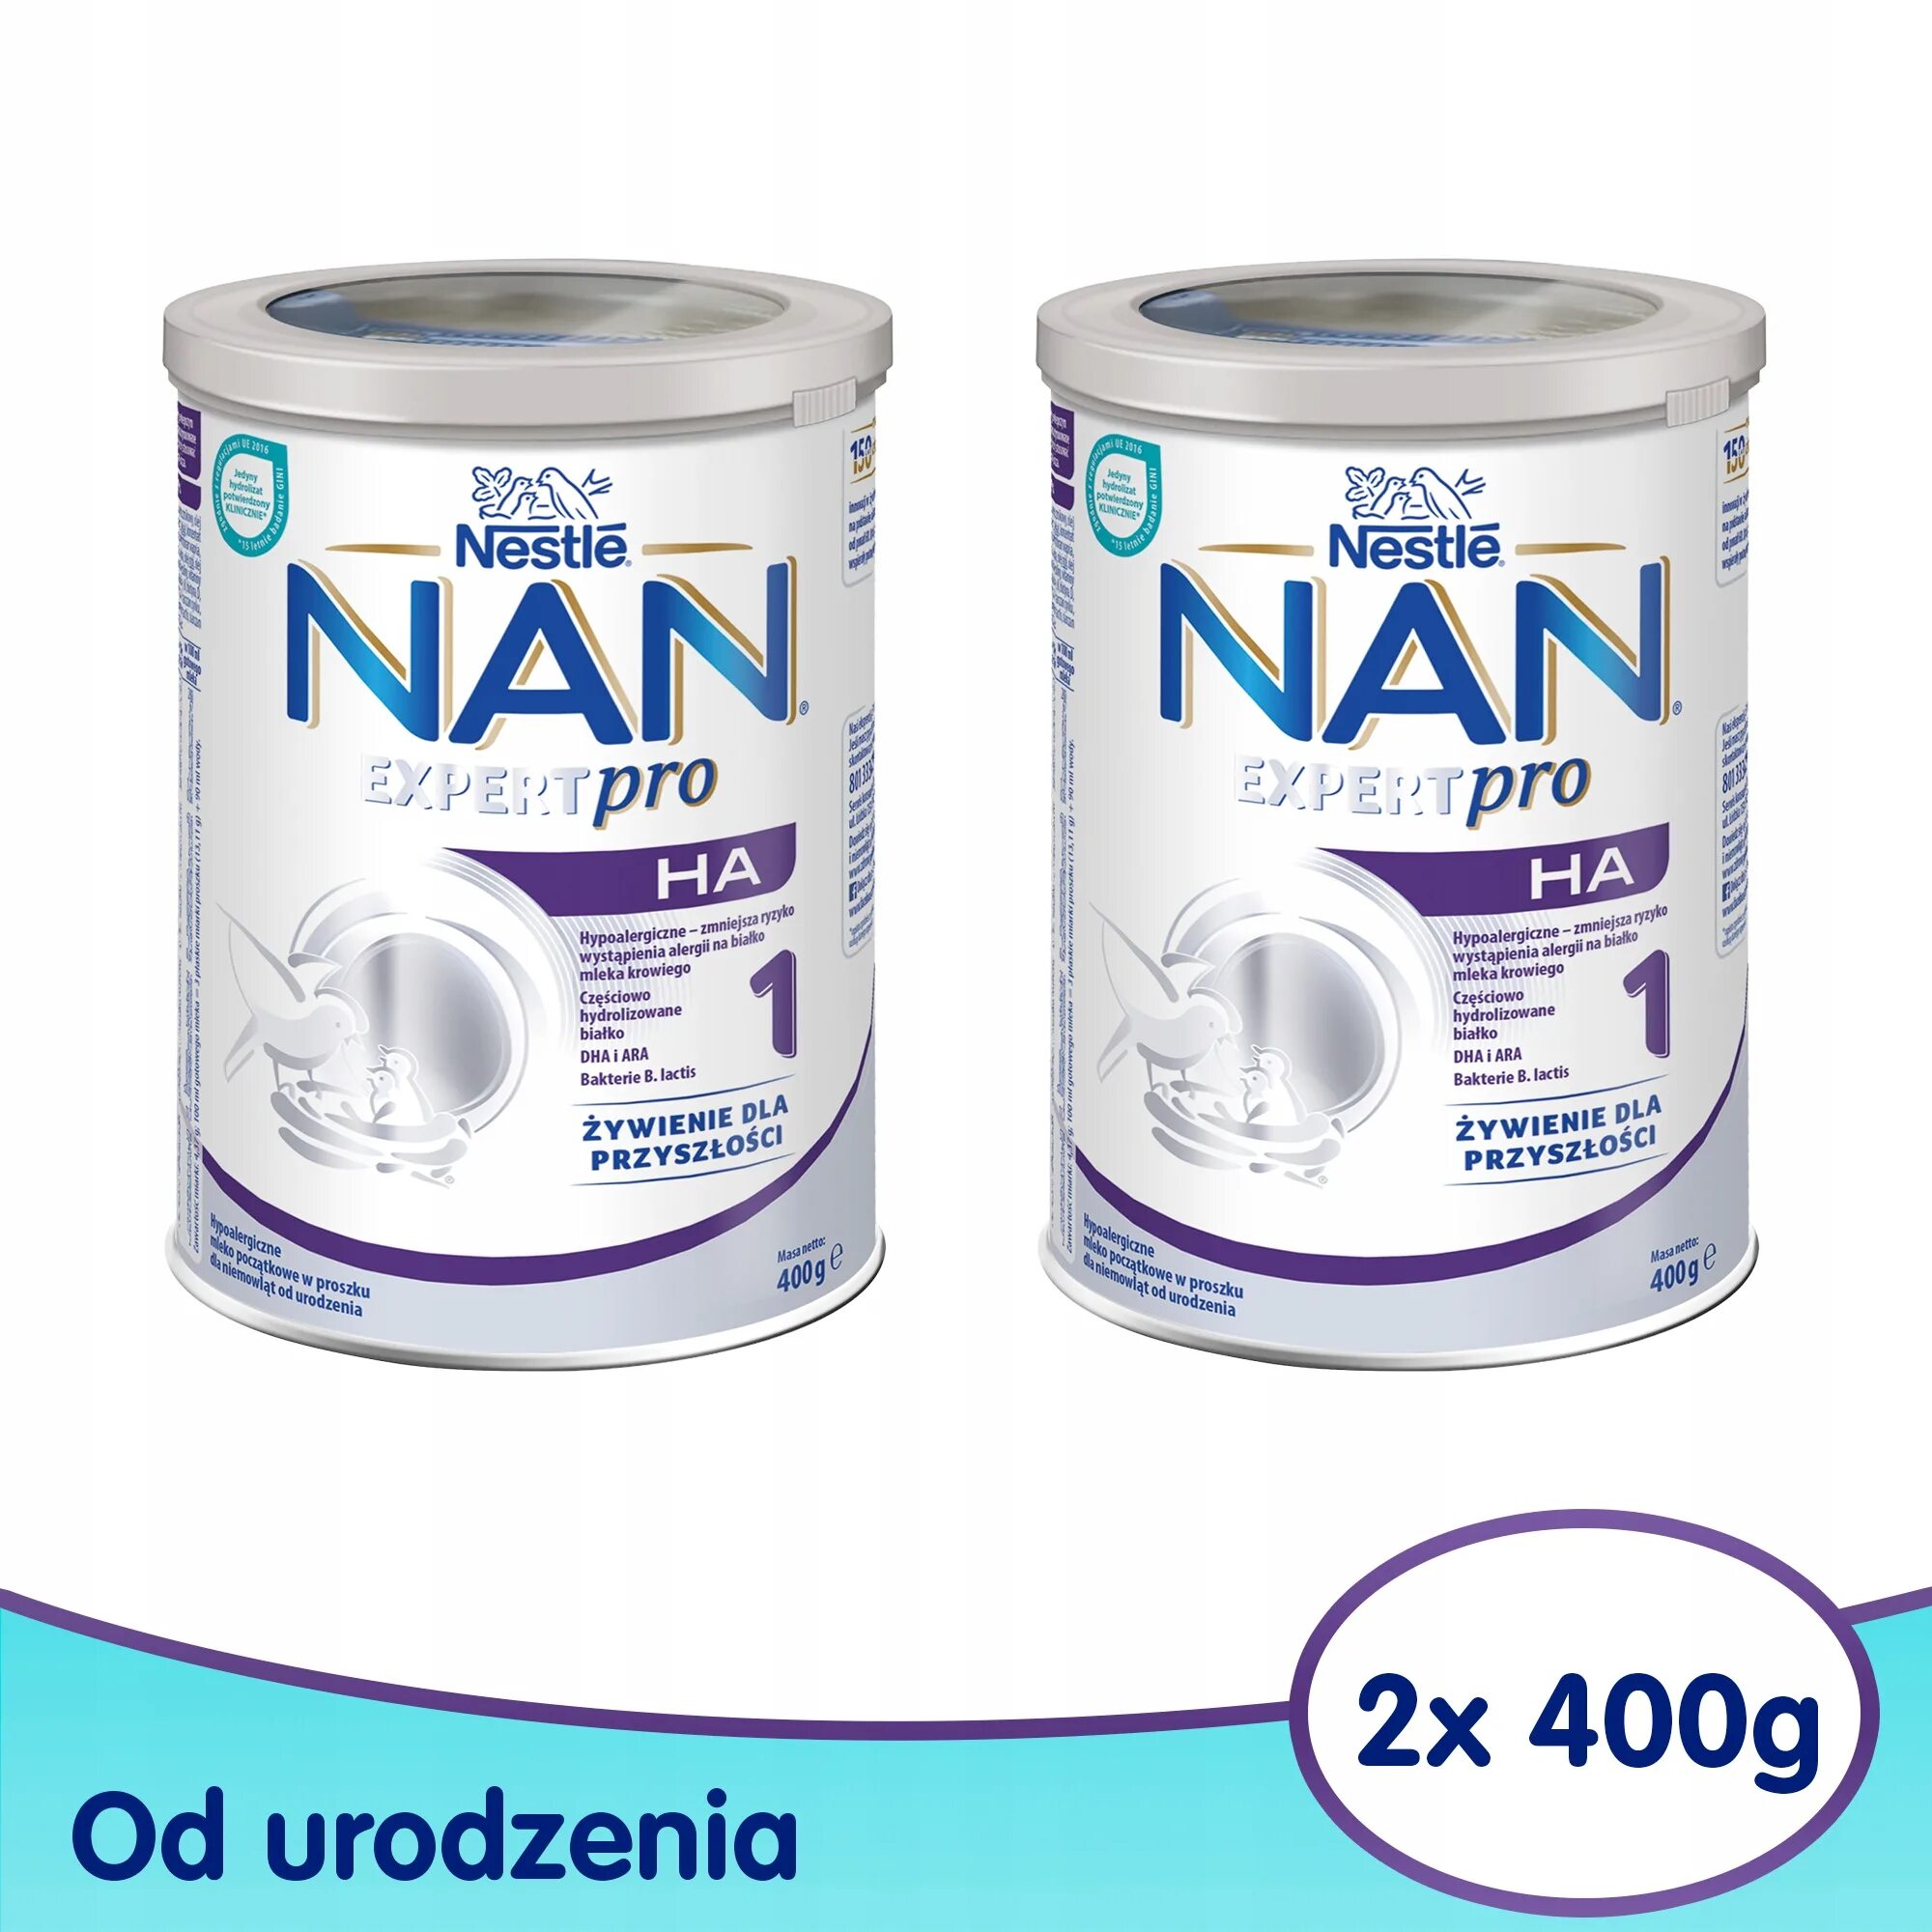 Нан антиаллергия купить. Nan Expert Pro гипоаллергенный 1. Смесь nan Expert Pro 1. Nestle nan Expert Pro 400 g. Nan ha смесь эксперт антиаллергия.